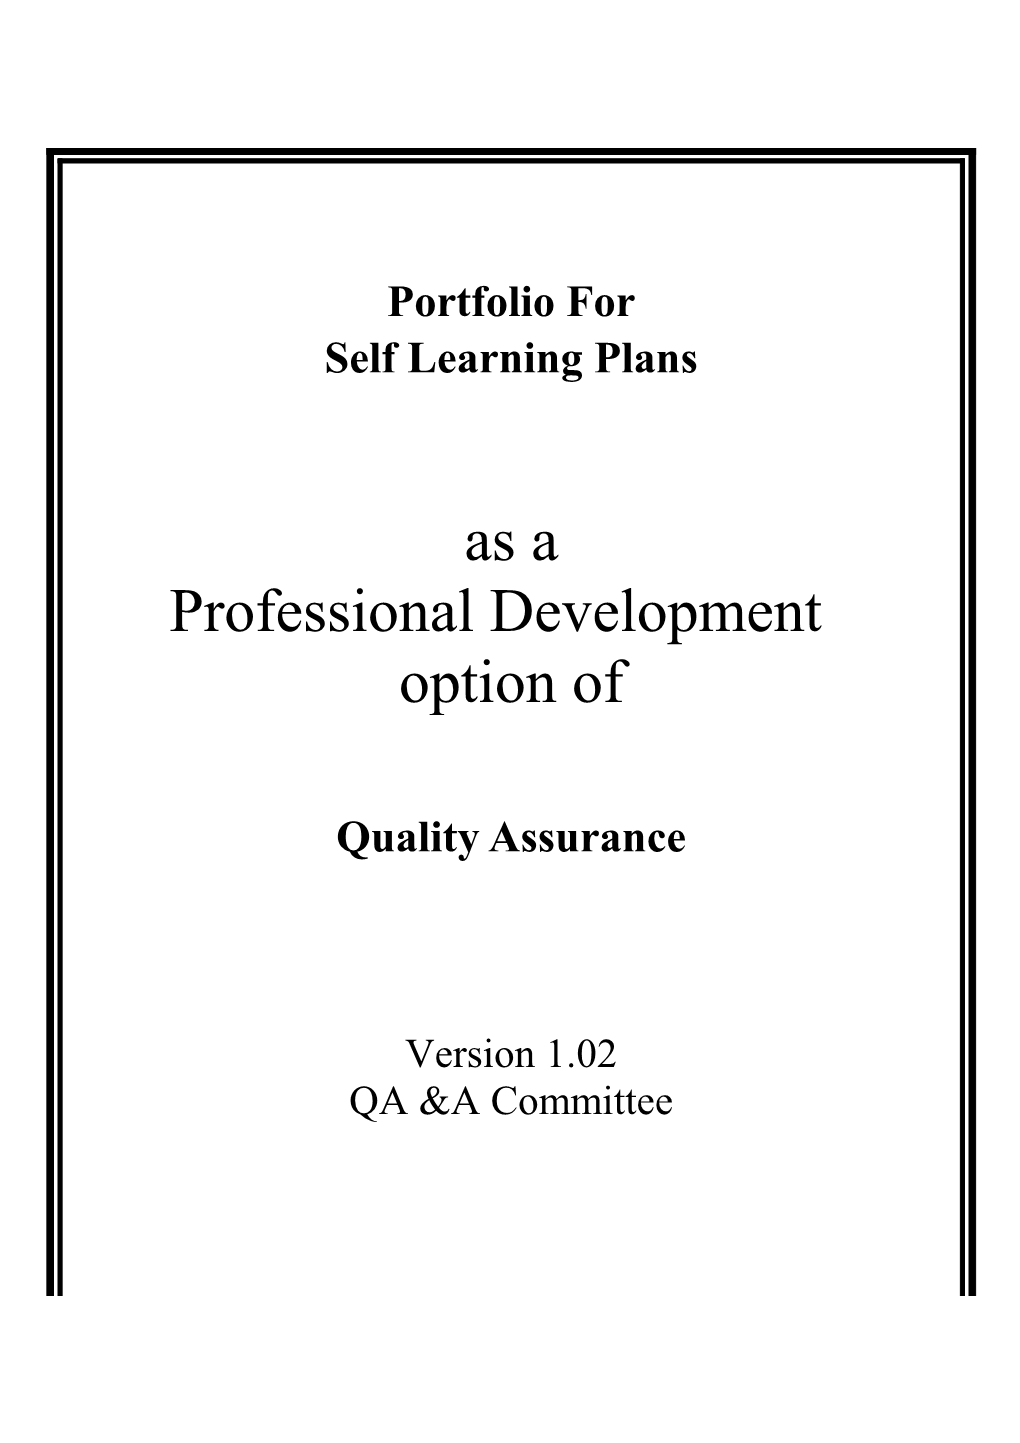 HKCFP - Portfolio for Self Learning Plans